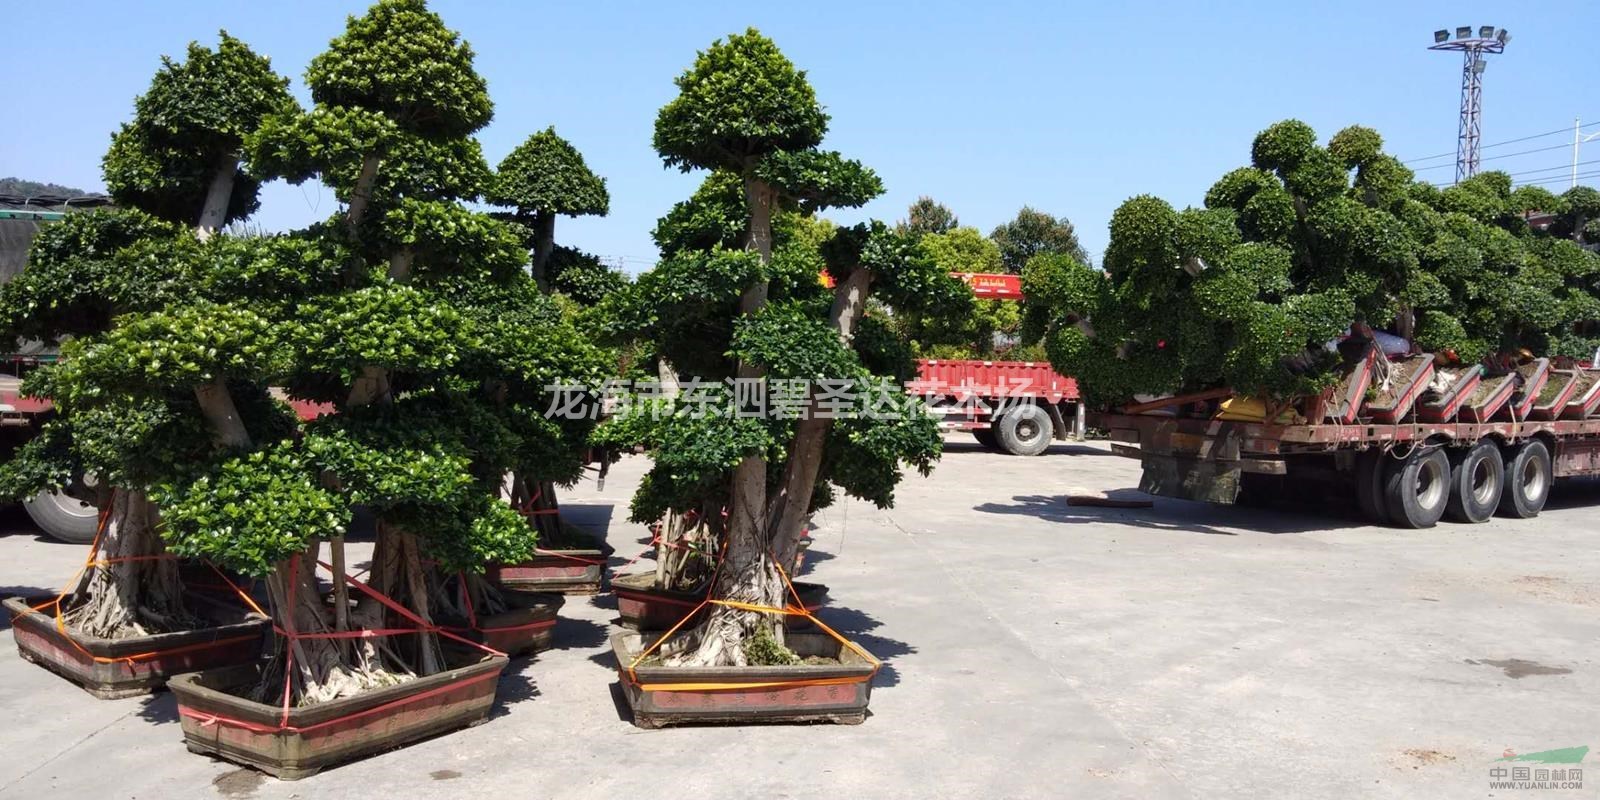 福建漳州榕树造型桩景基地各种规格大量批发供应 自家货源